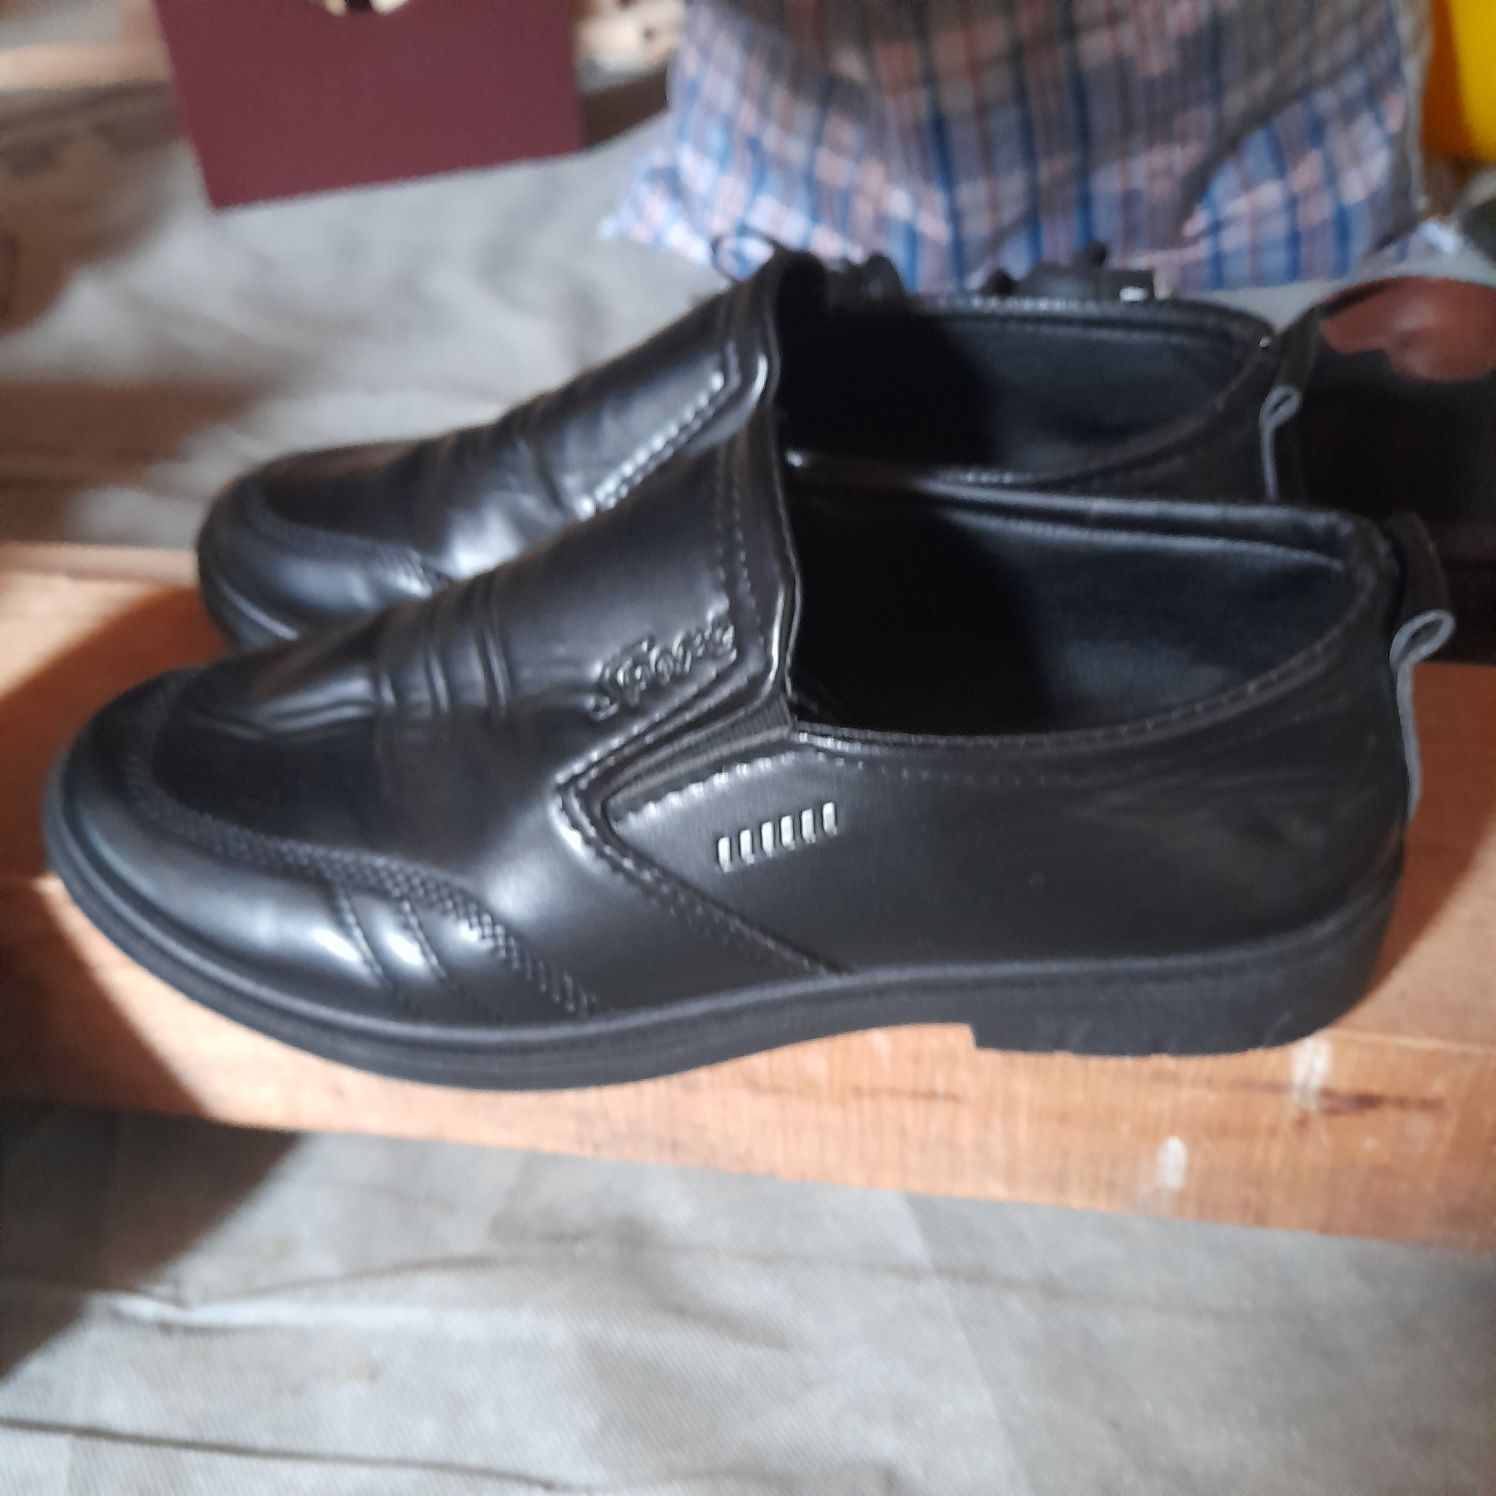 Vând pantofi de gală bărbați
„Samus GuitArt” - Satu Mare - 2o24
Ediția